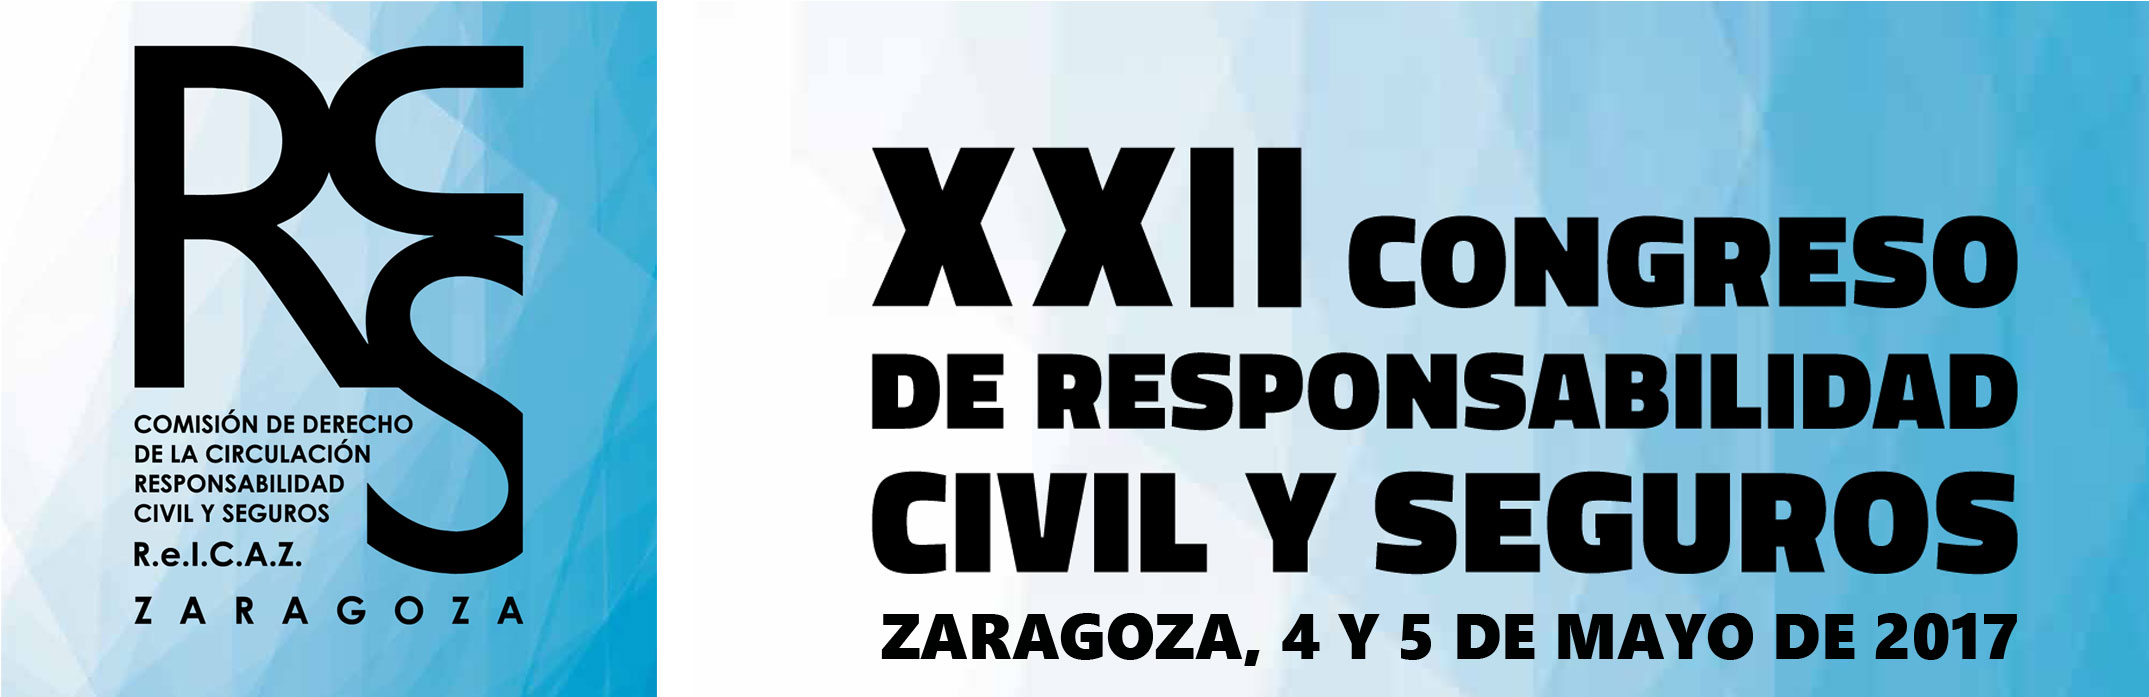 XXII Congreso de Responsabilidad Civil y Seguros